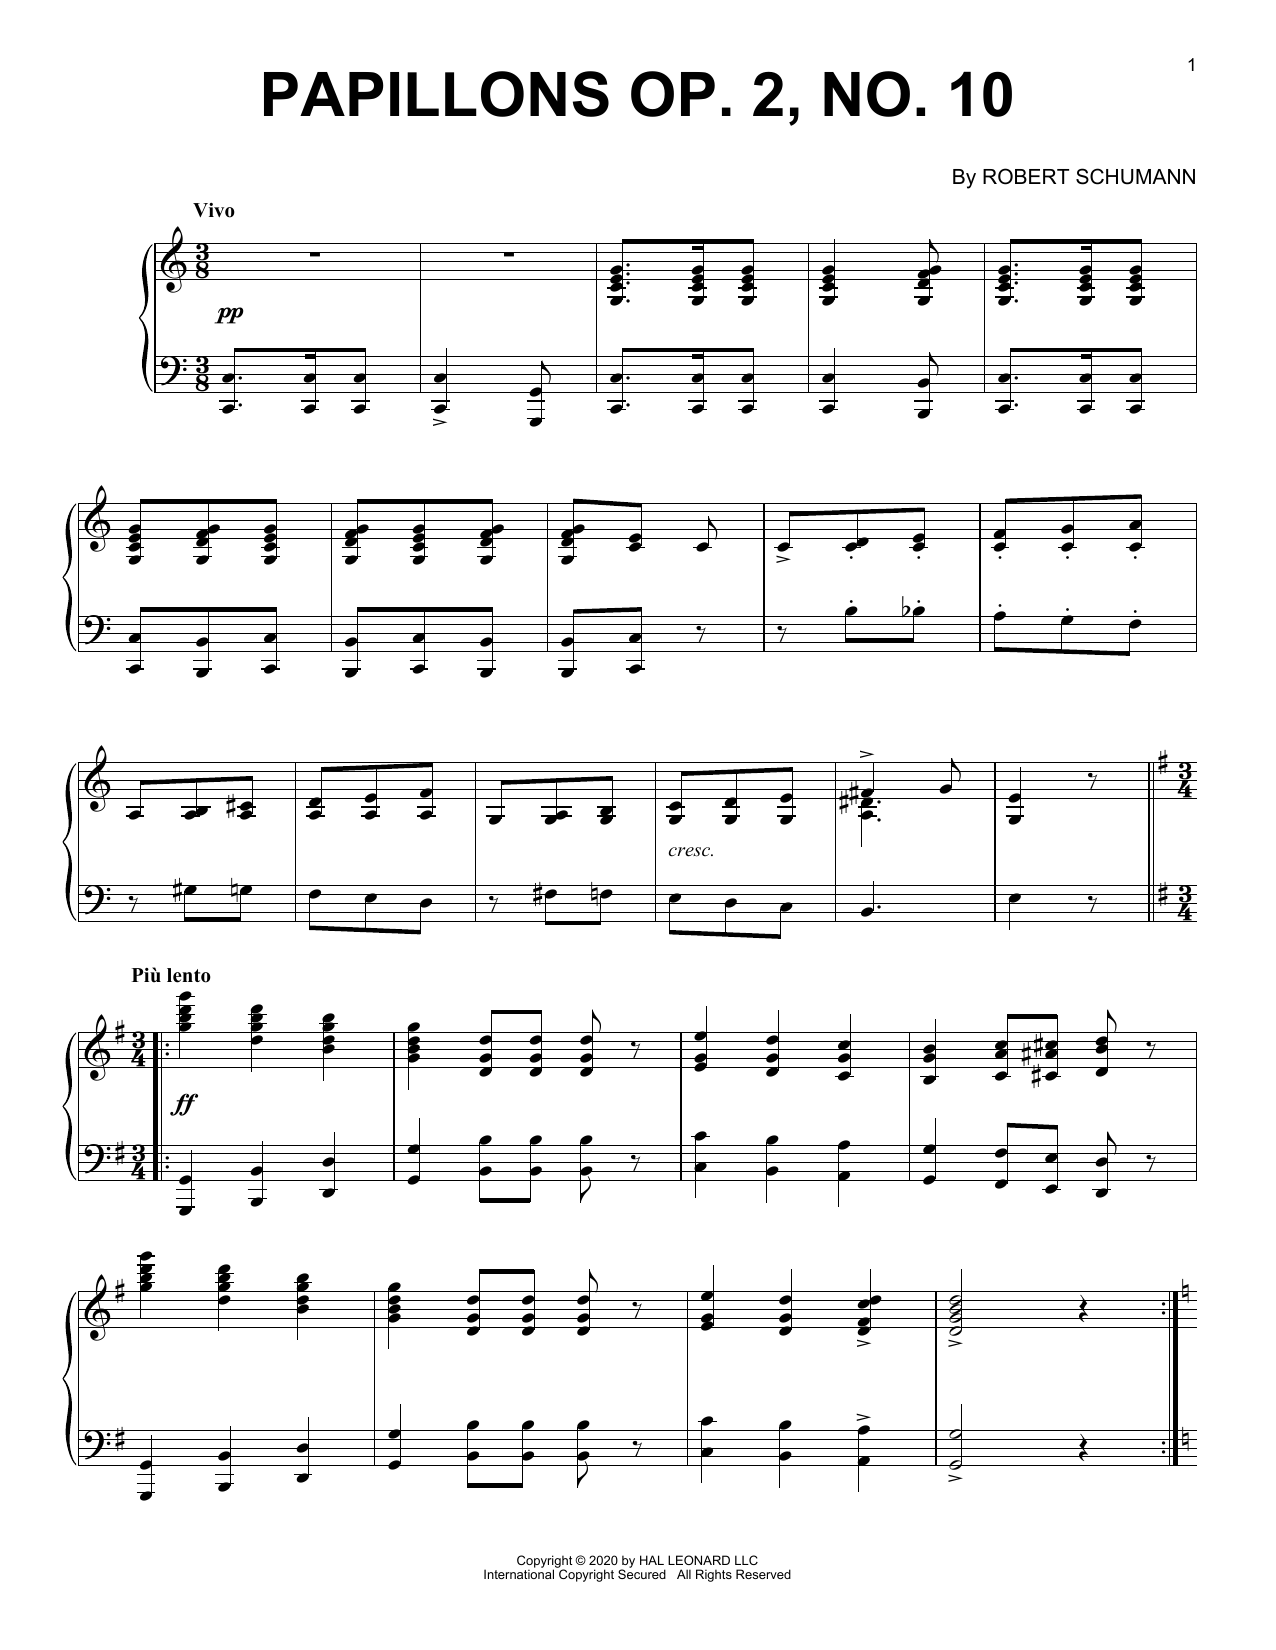 Download Robert Schumann Papillons, Op. 2, No. 10 